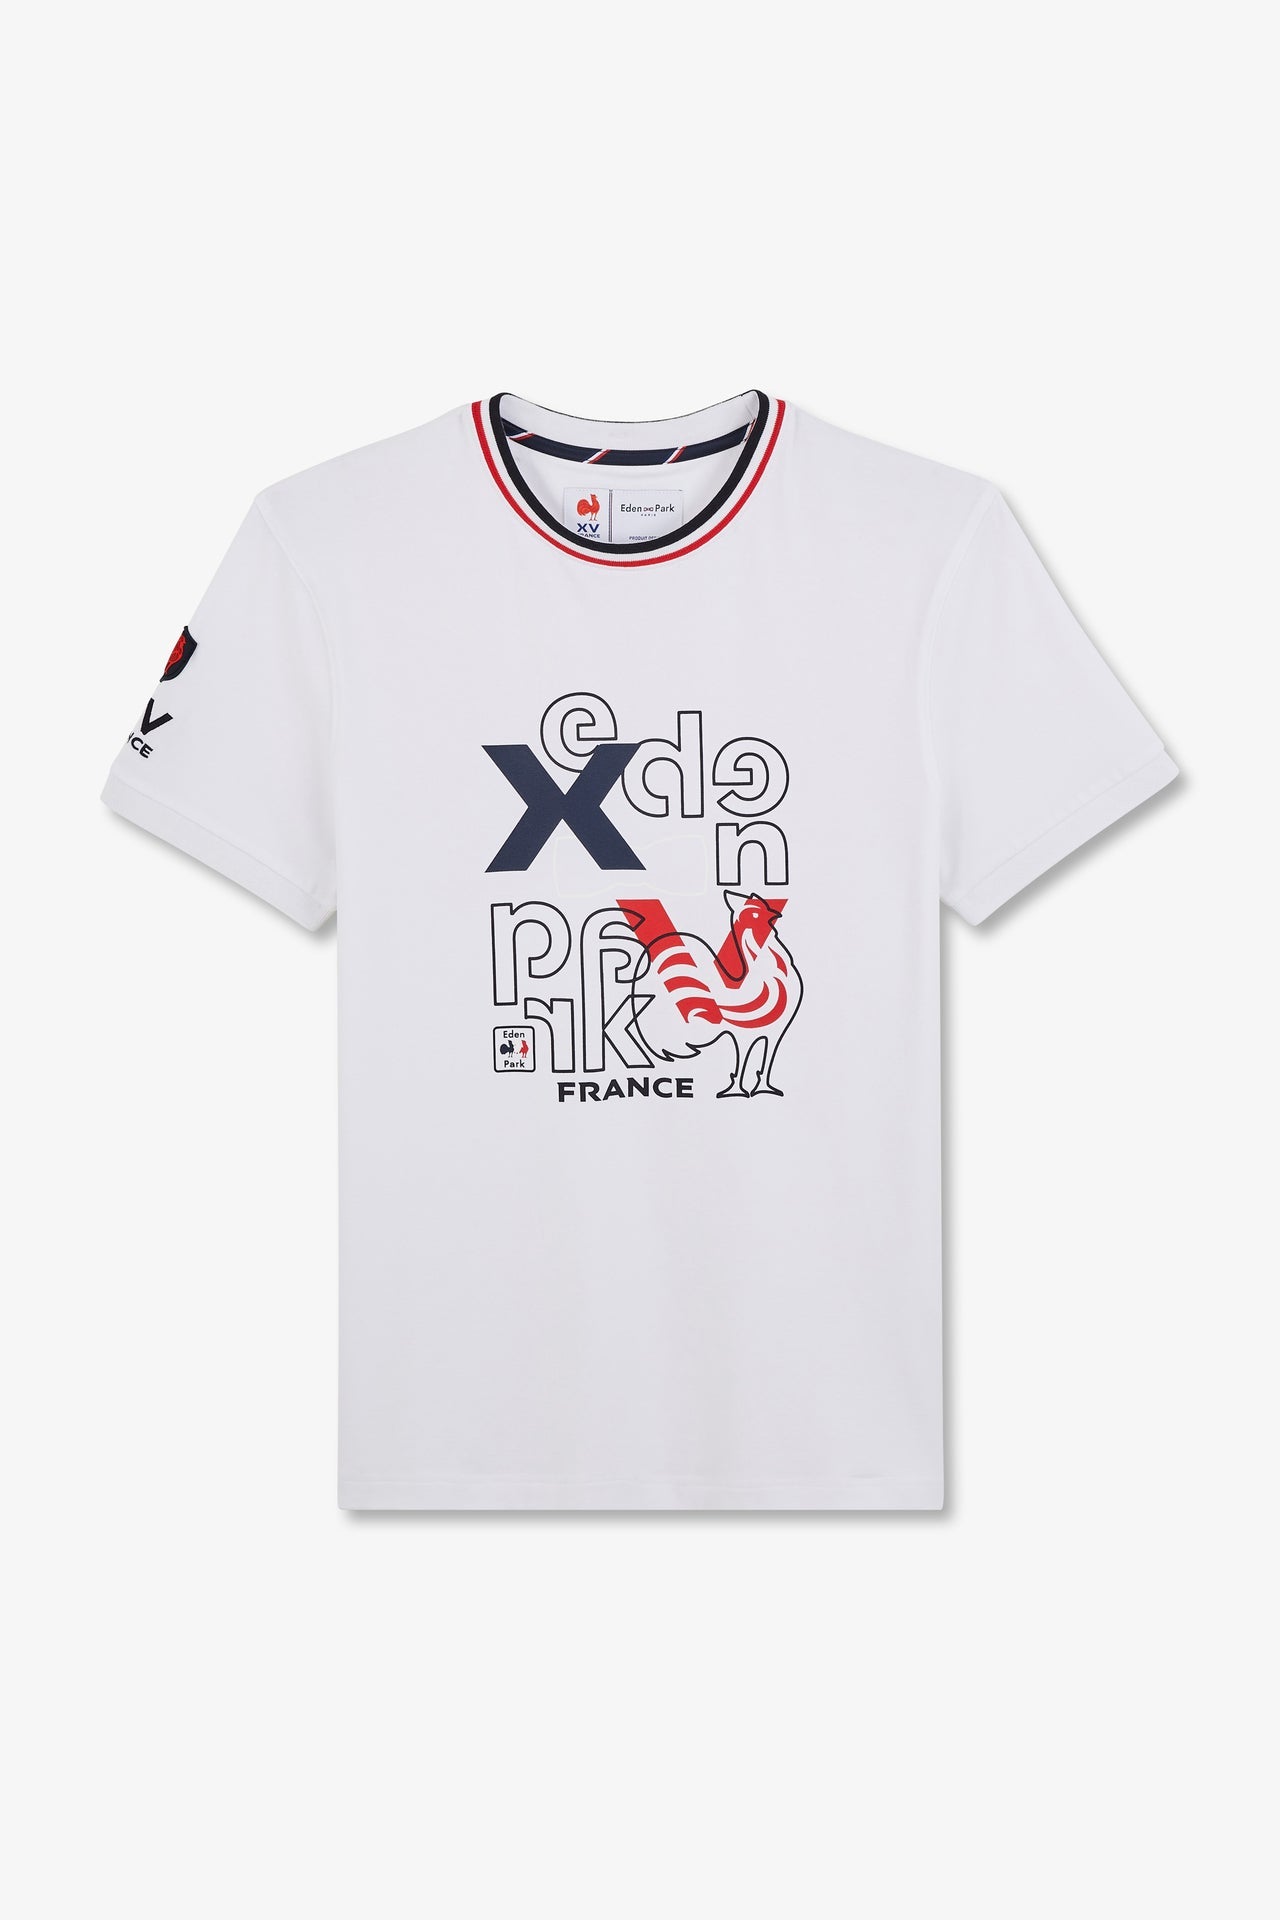 T-shirt à manches courtes blanc imprimé XV de France - Image 2